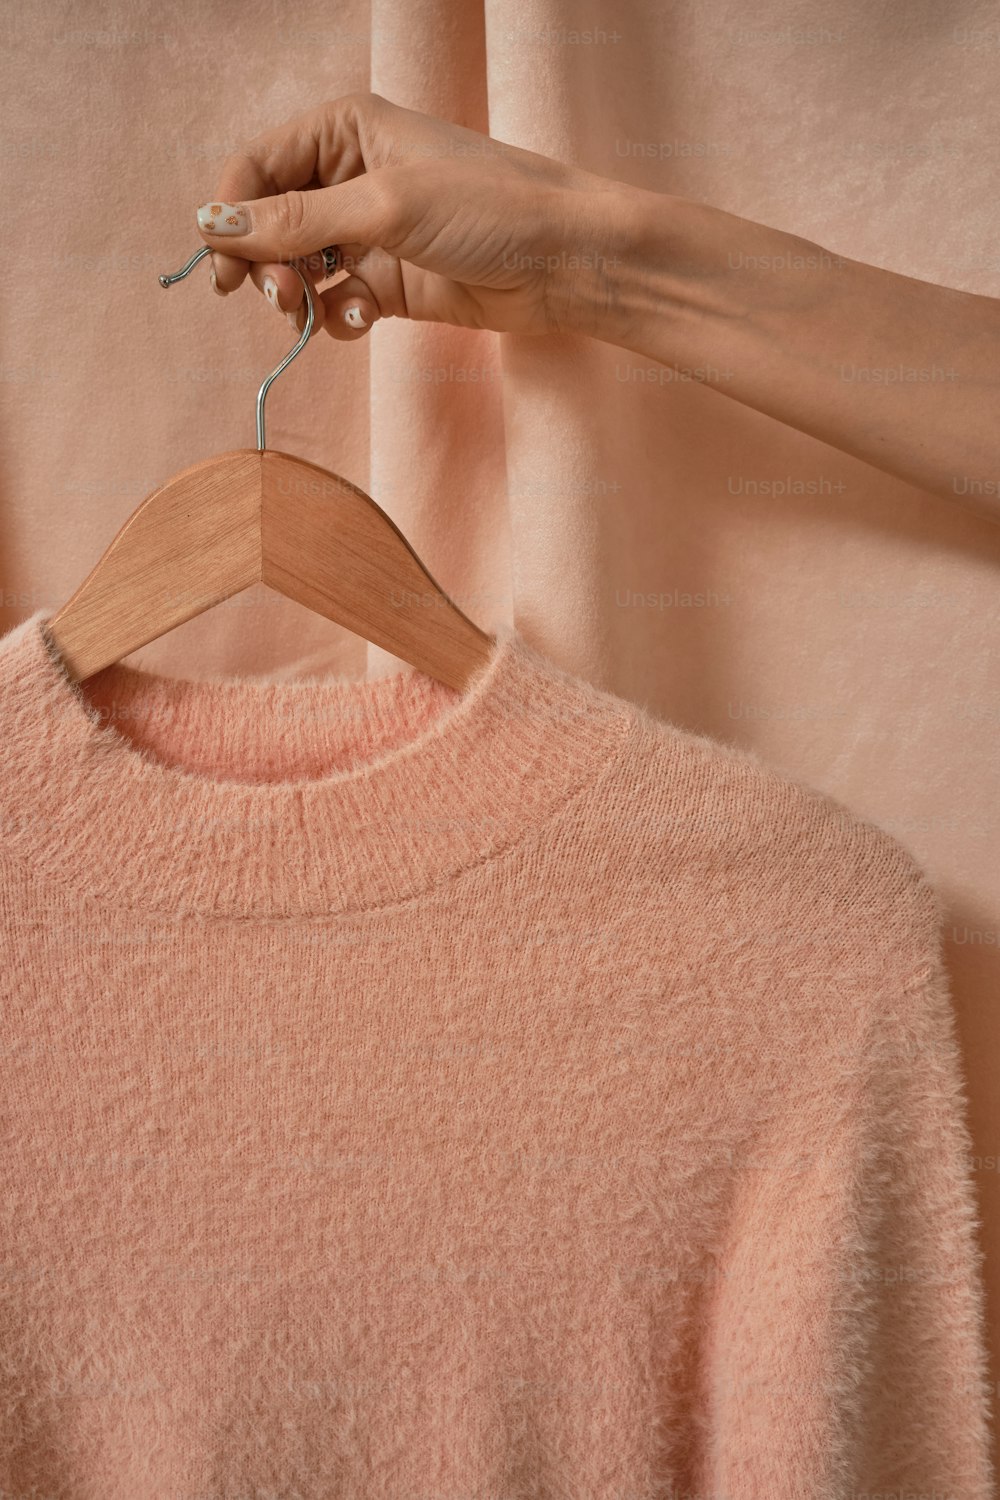 분홍색 스웨터 위에 나무 옷걸이를 들고 있는 여성의 손